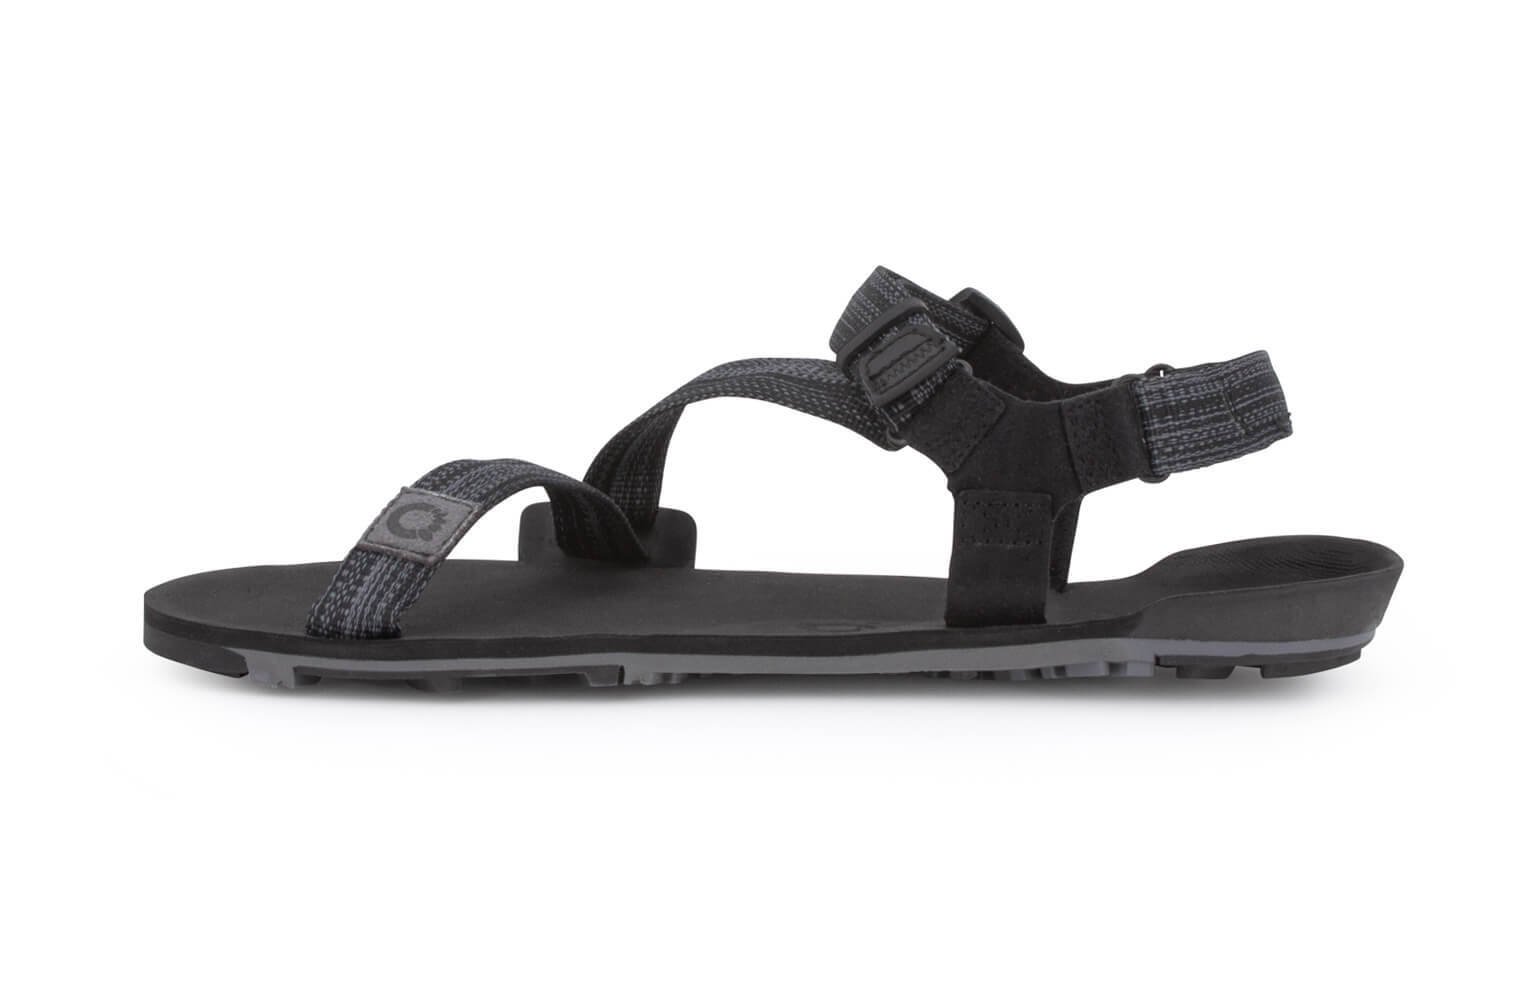 Xero shoes [m] Z-Trail EV - Multi-black | TTM-MBLK |